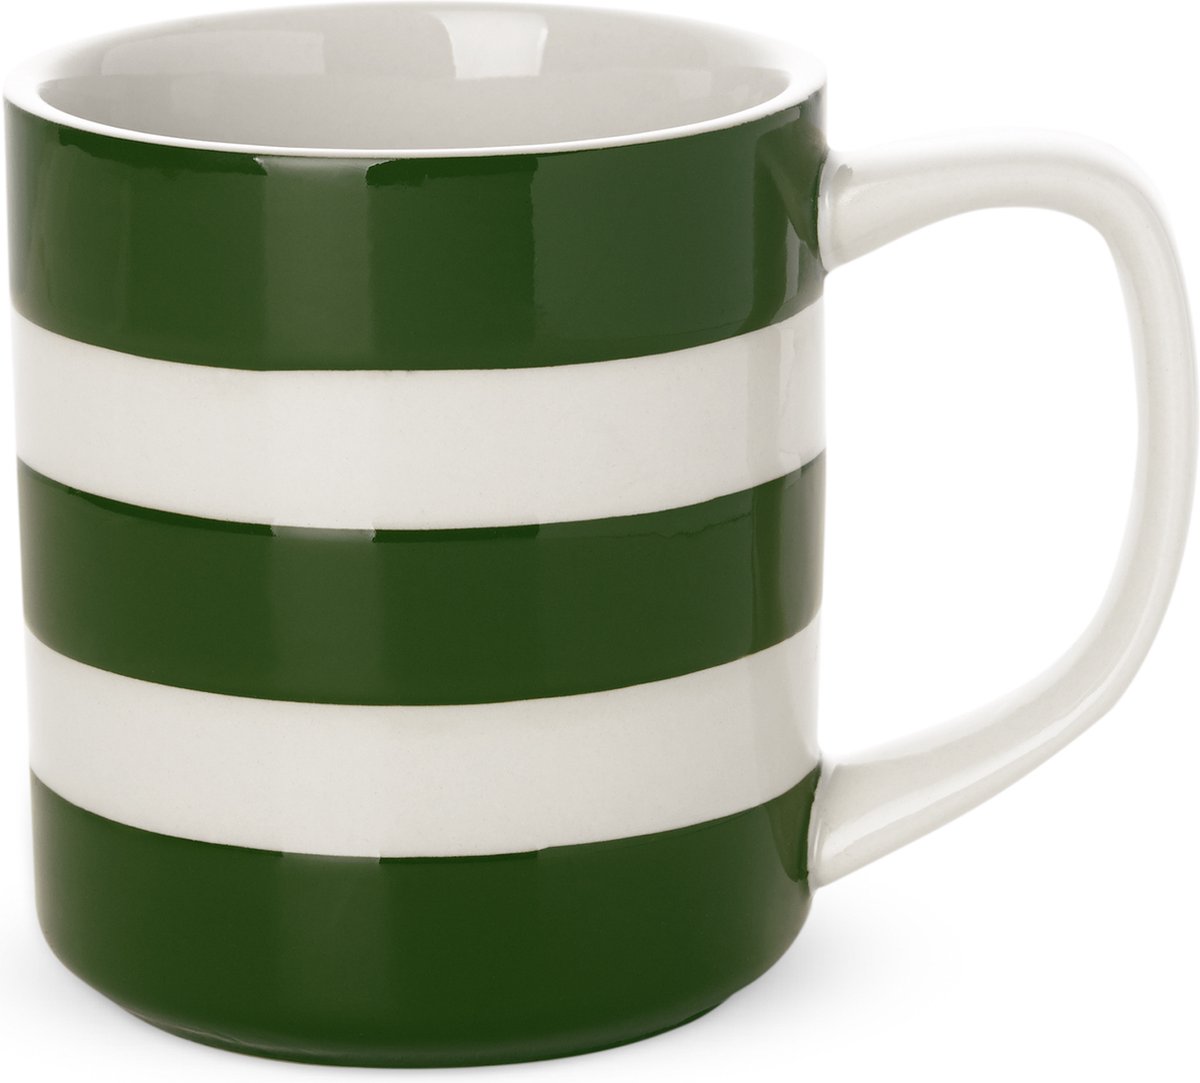 Cornishware Adder Green Mug 28cl- Mok